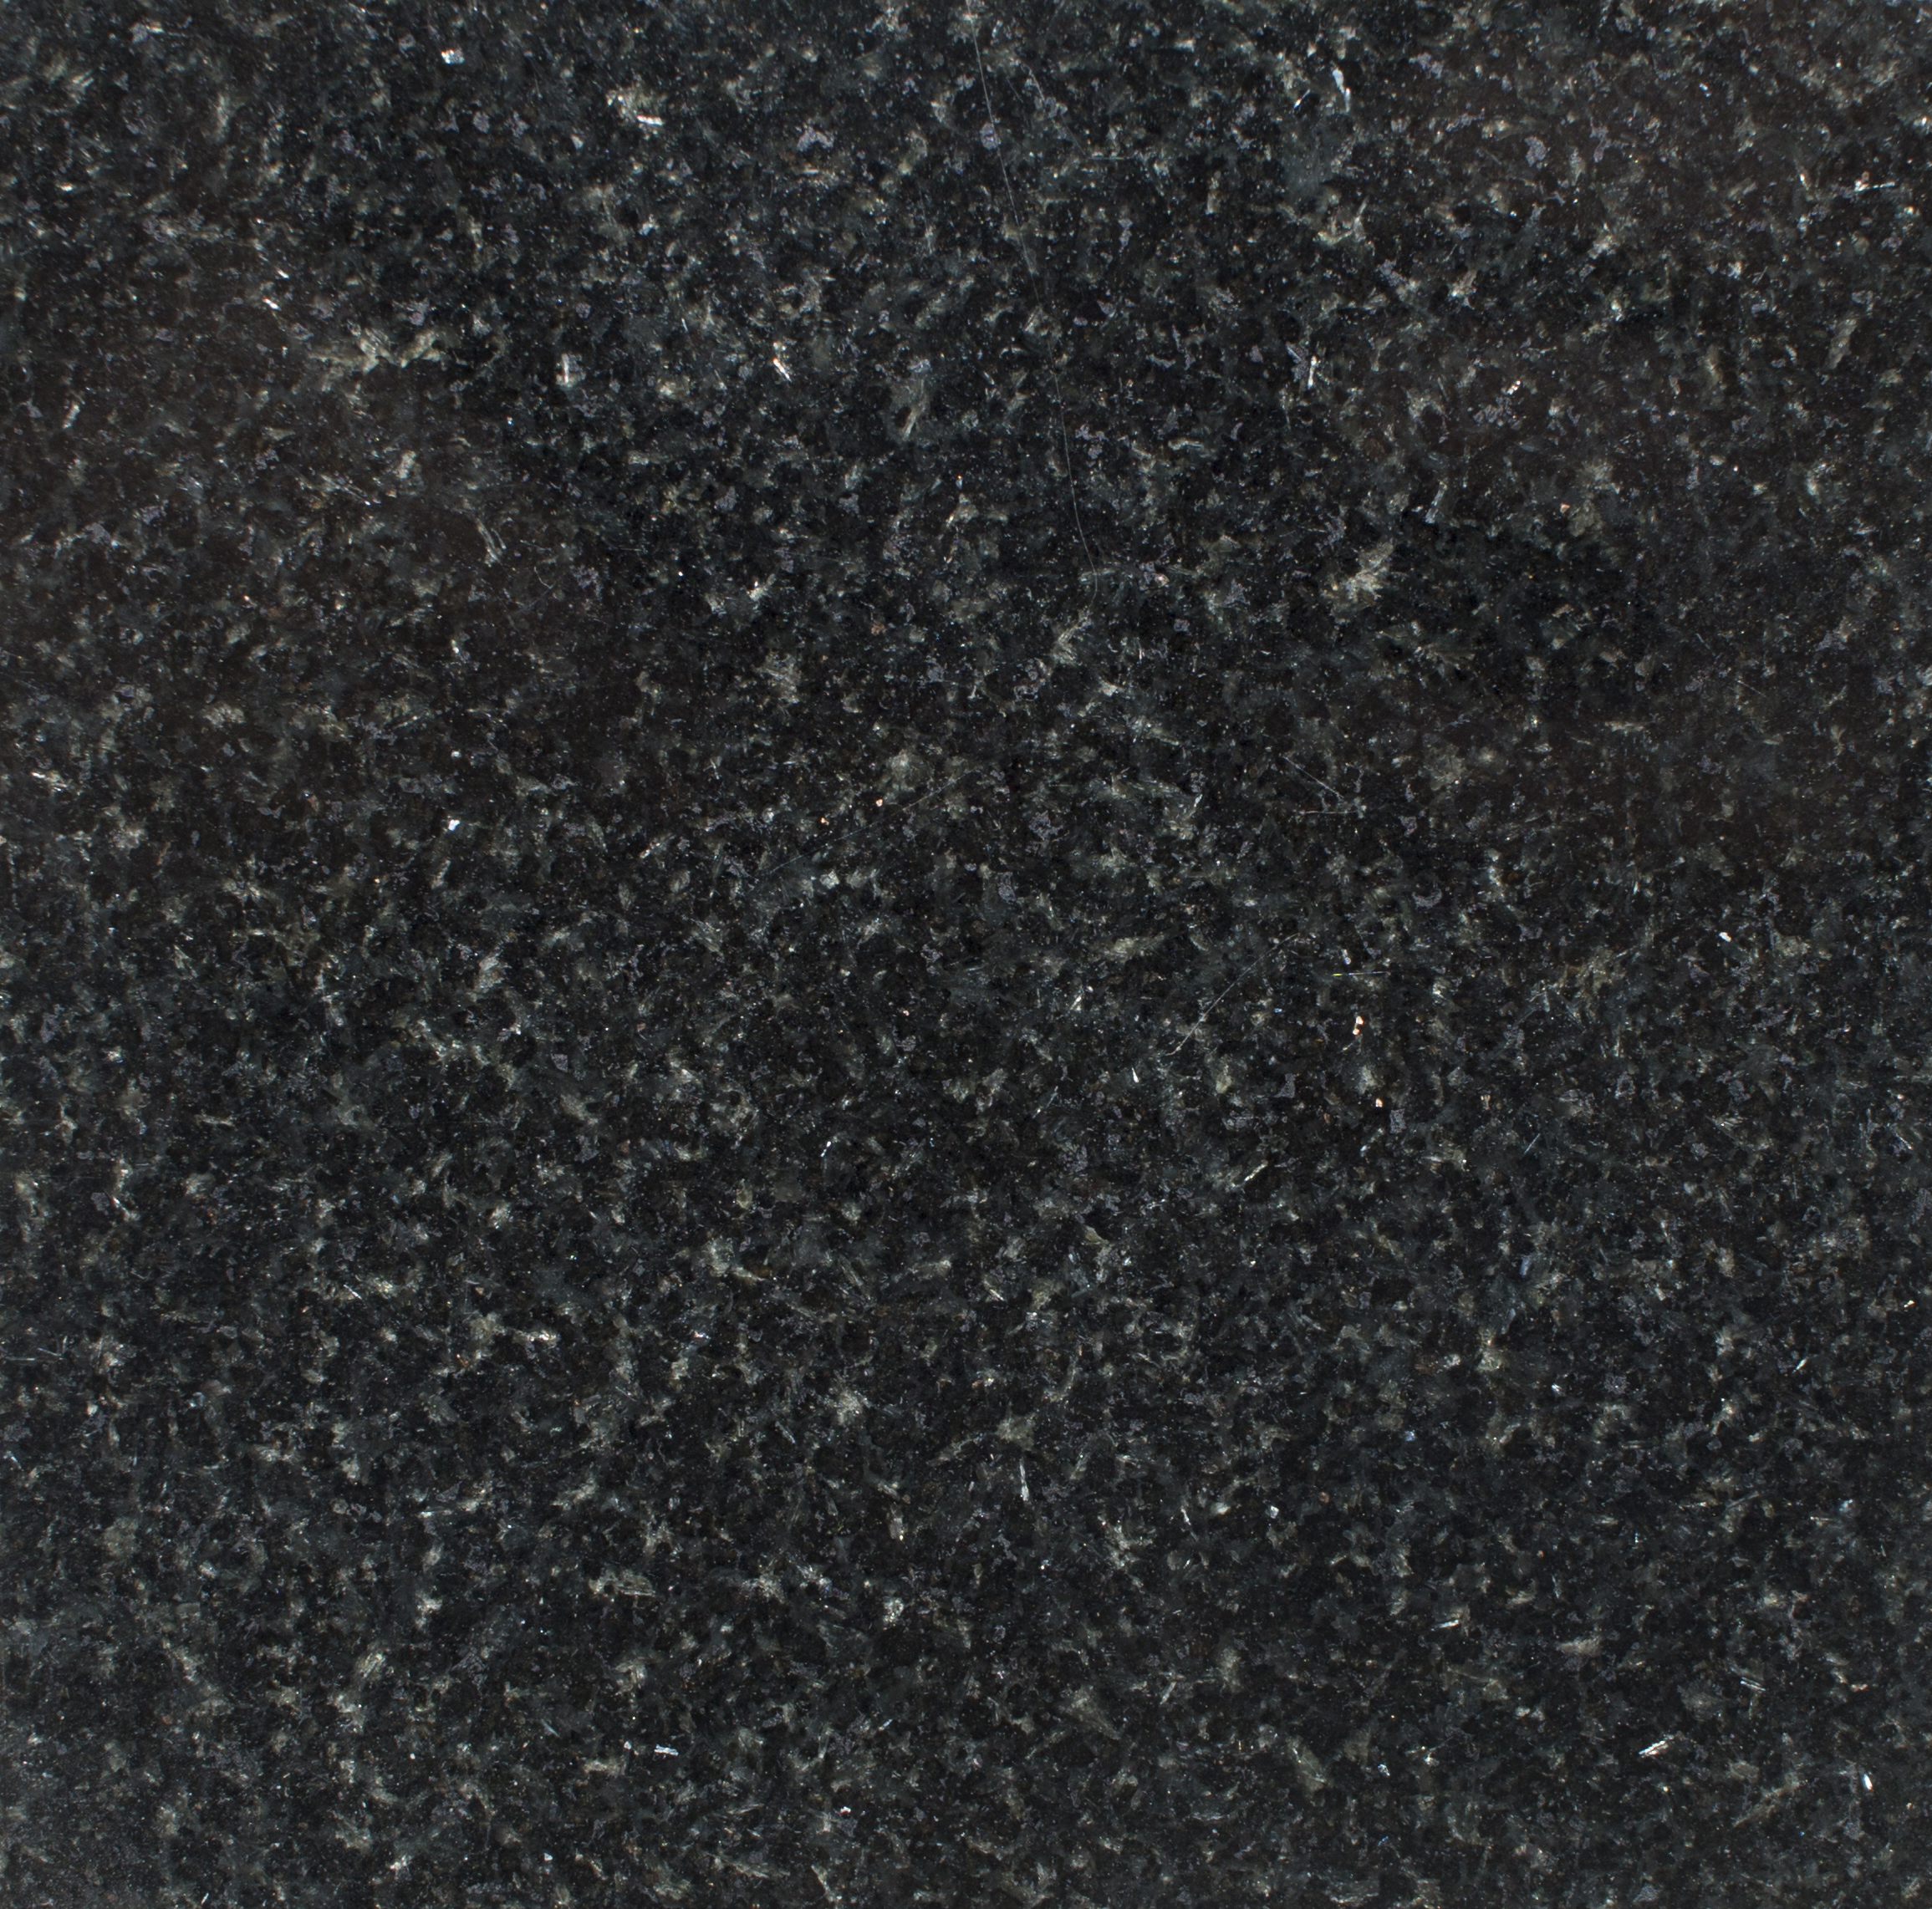 India Black Granite